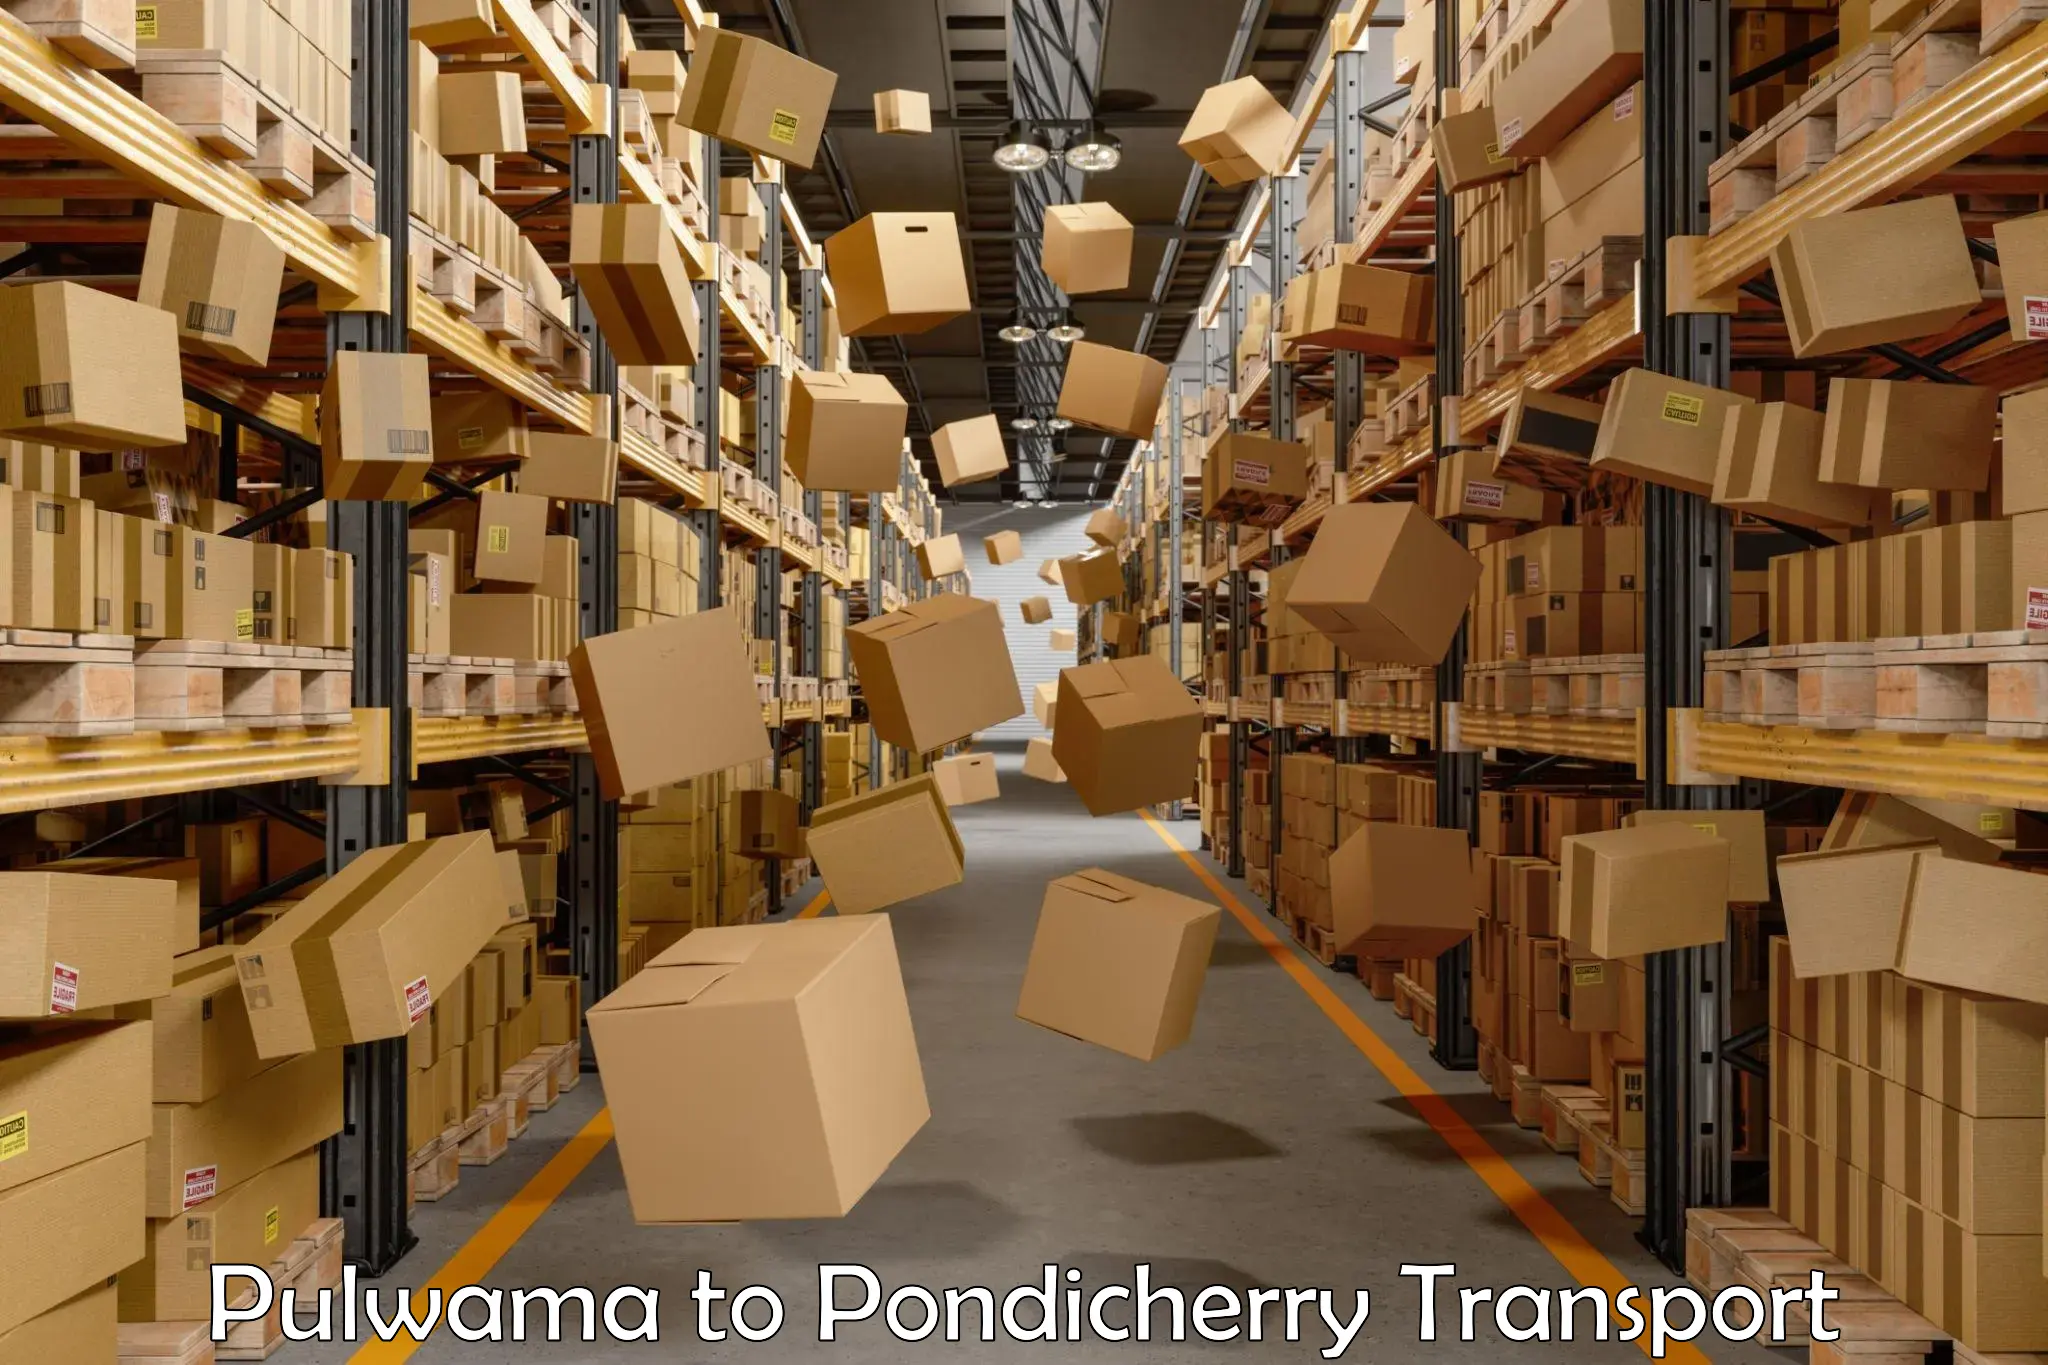 Nearest transport service Pulwama to Pondicherry University